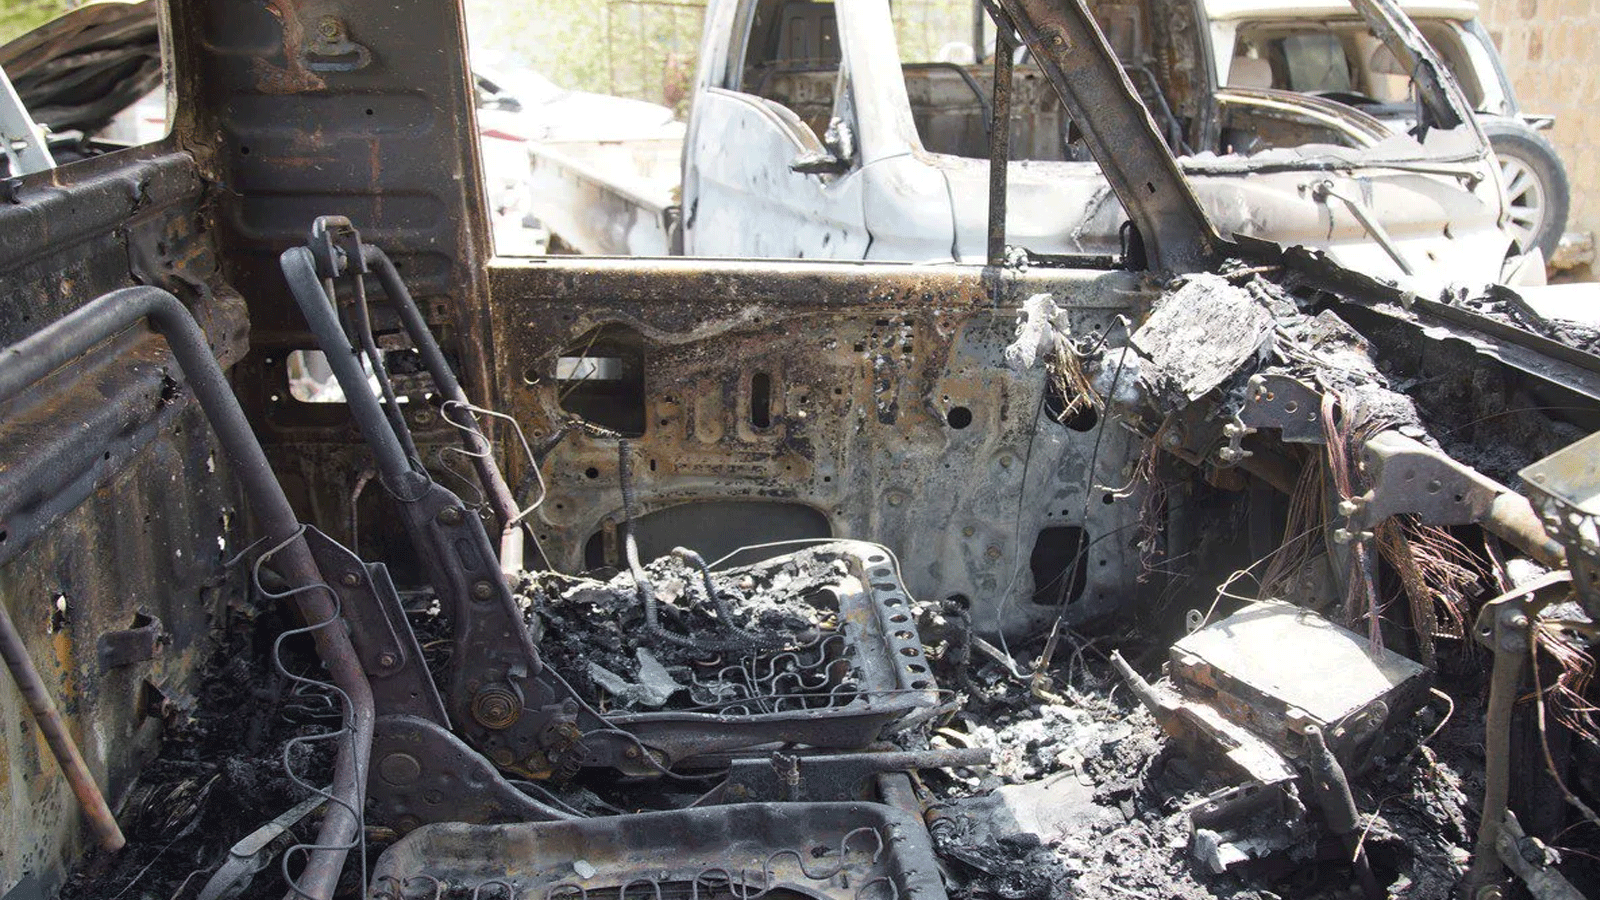 لقطة أرشيفية لسيارات متضررة بعد هجوم 4 أيار\مايو 2022